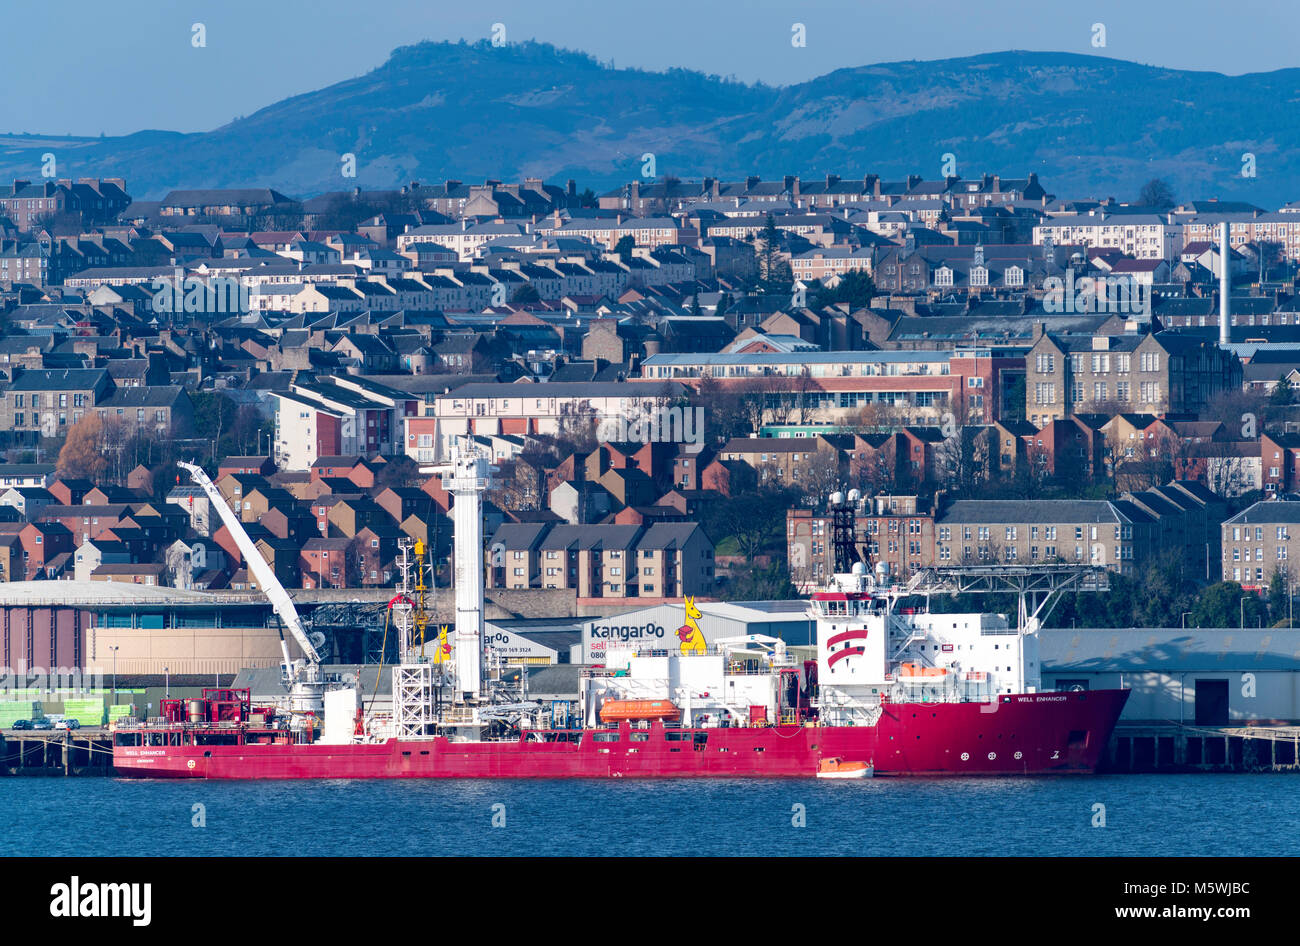 Vue sur Ville de Dundee avec le soutien de l'industrie pétrolière en mer bateaux amarrés sur le bord de mer en Tayside, Ecosse, Royaume-Uni Banque D'Images